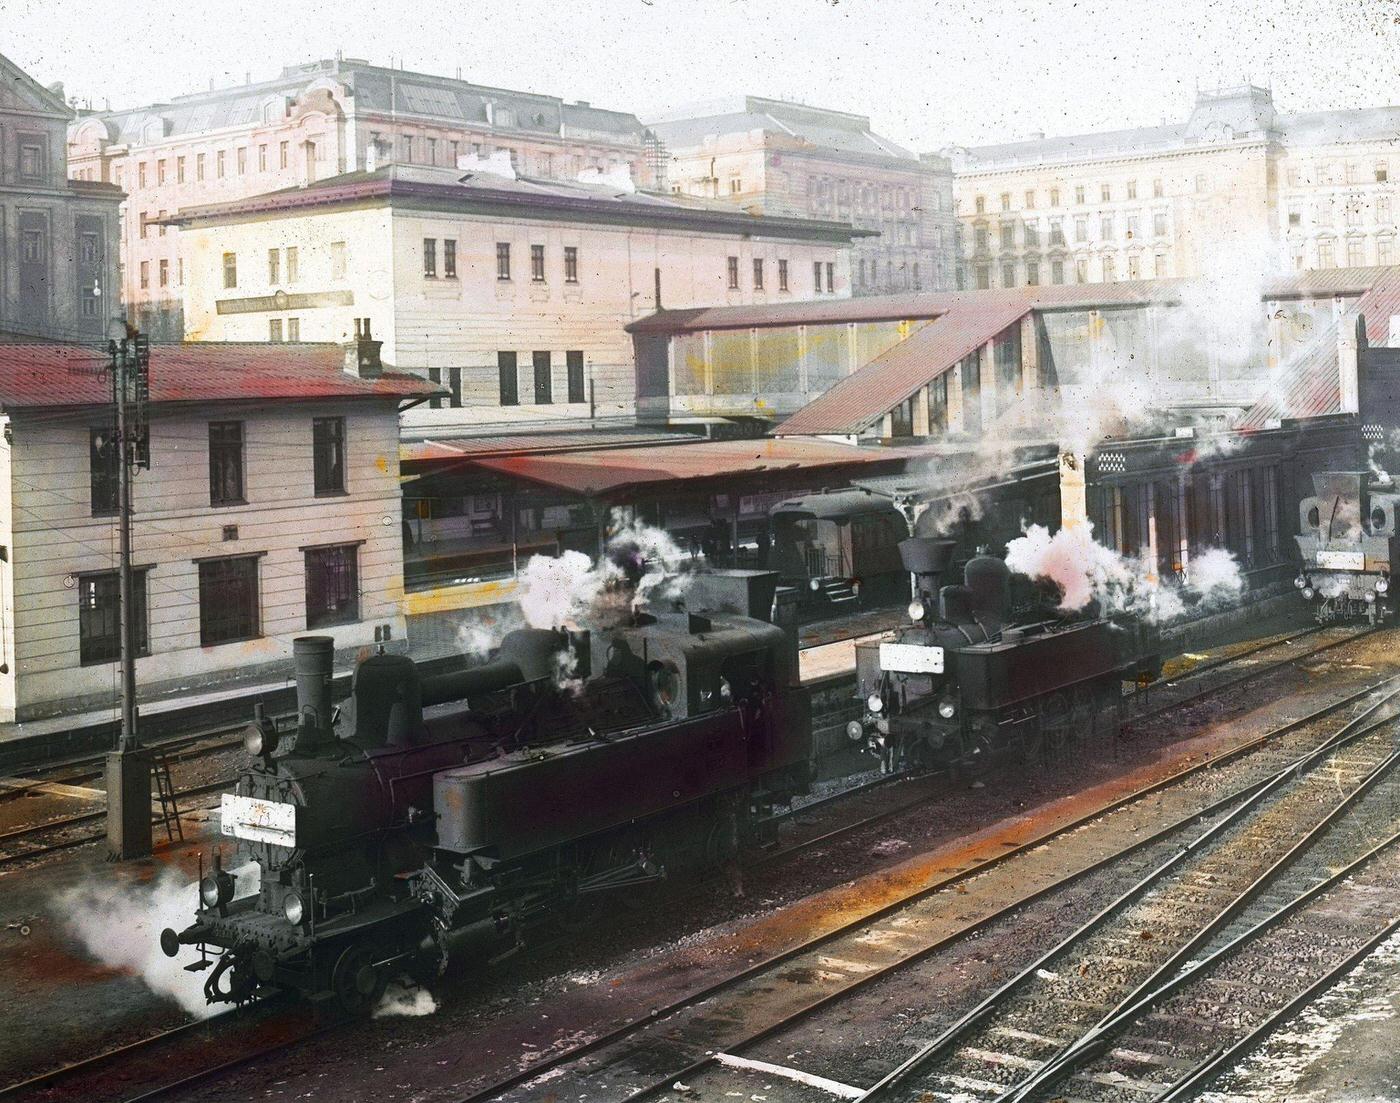 Wiener Stadtbahn station Hauptzollamt in Vienna's 3rd district, 1905.